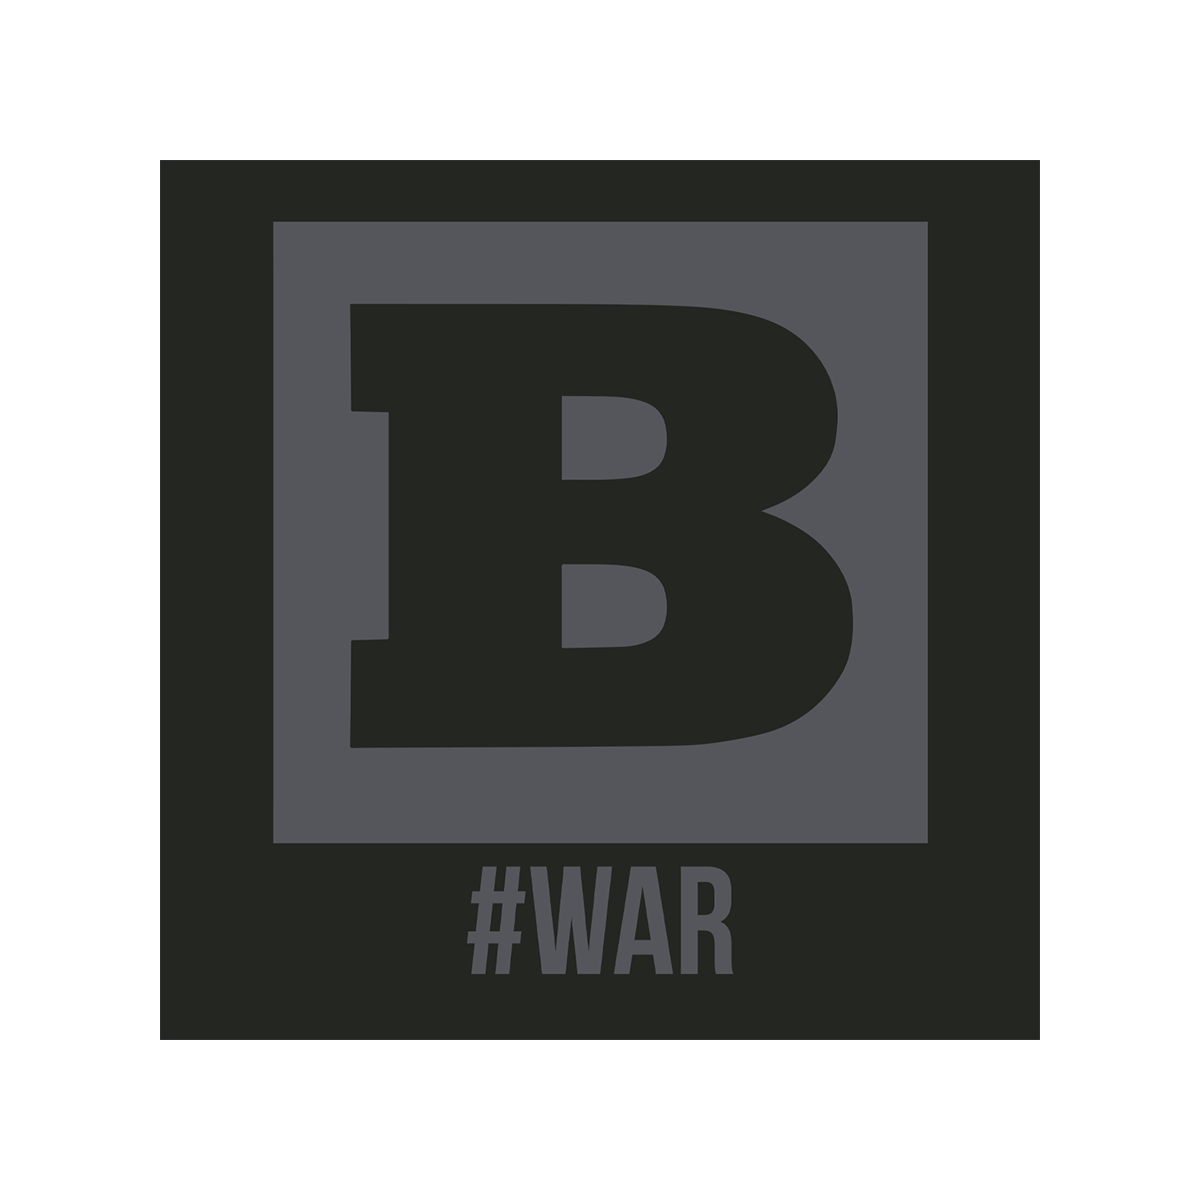 Breitbart #WAR Long Sleeve T-Shirt - Black